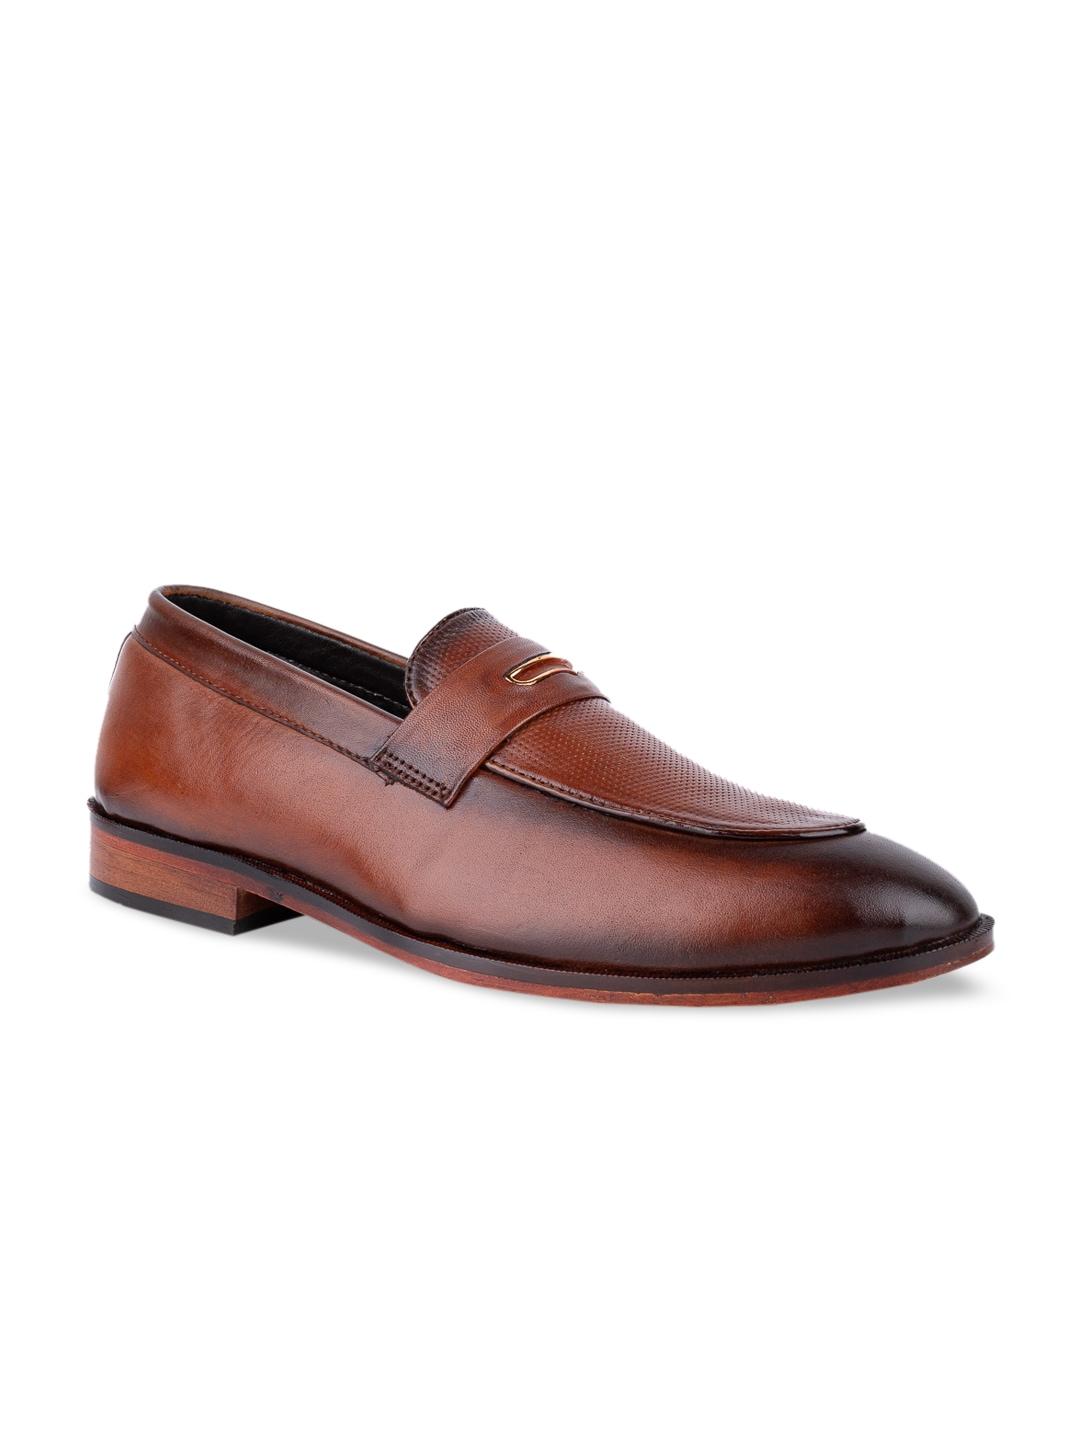 LA BOTTE Men Brown Textured Leather Formal Loafers